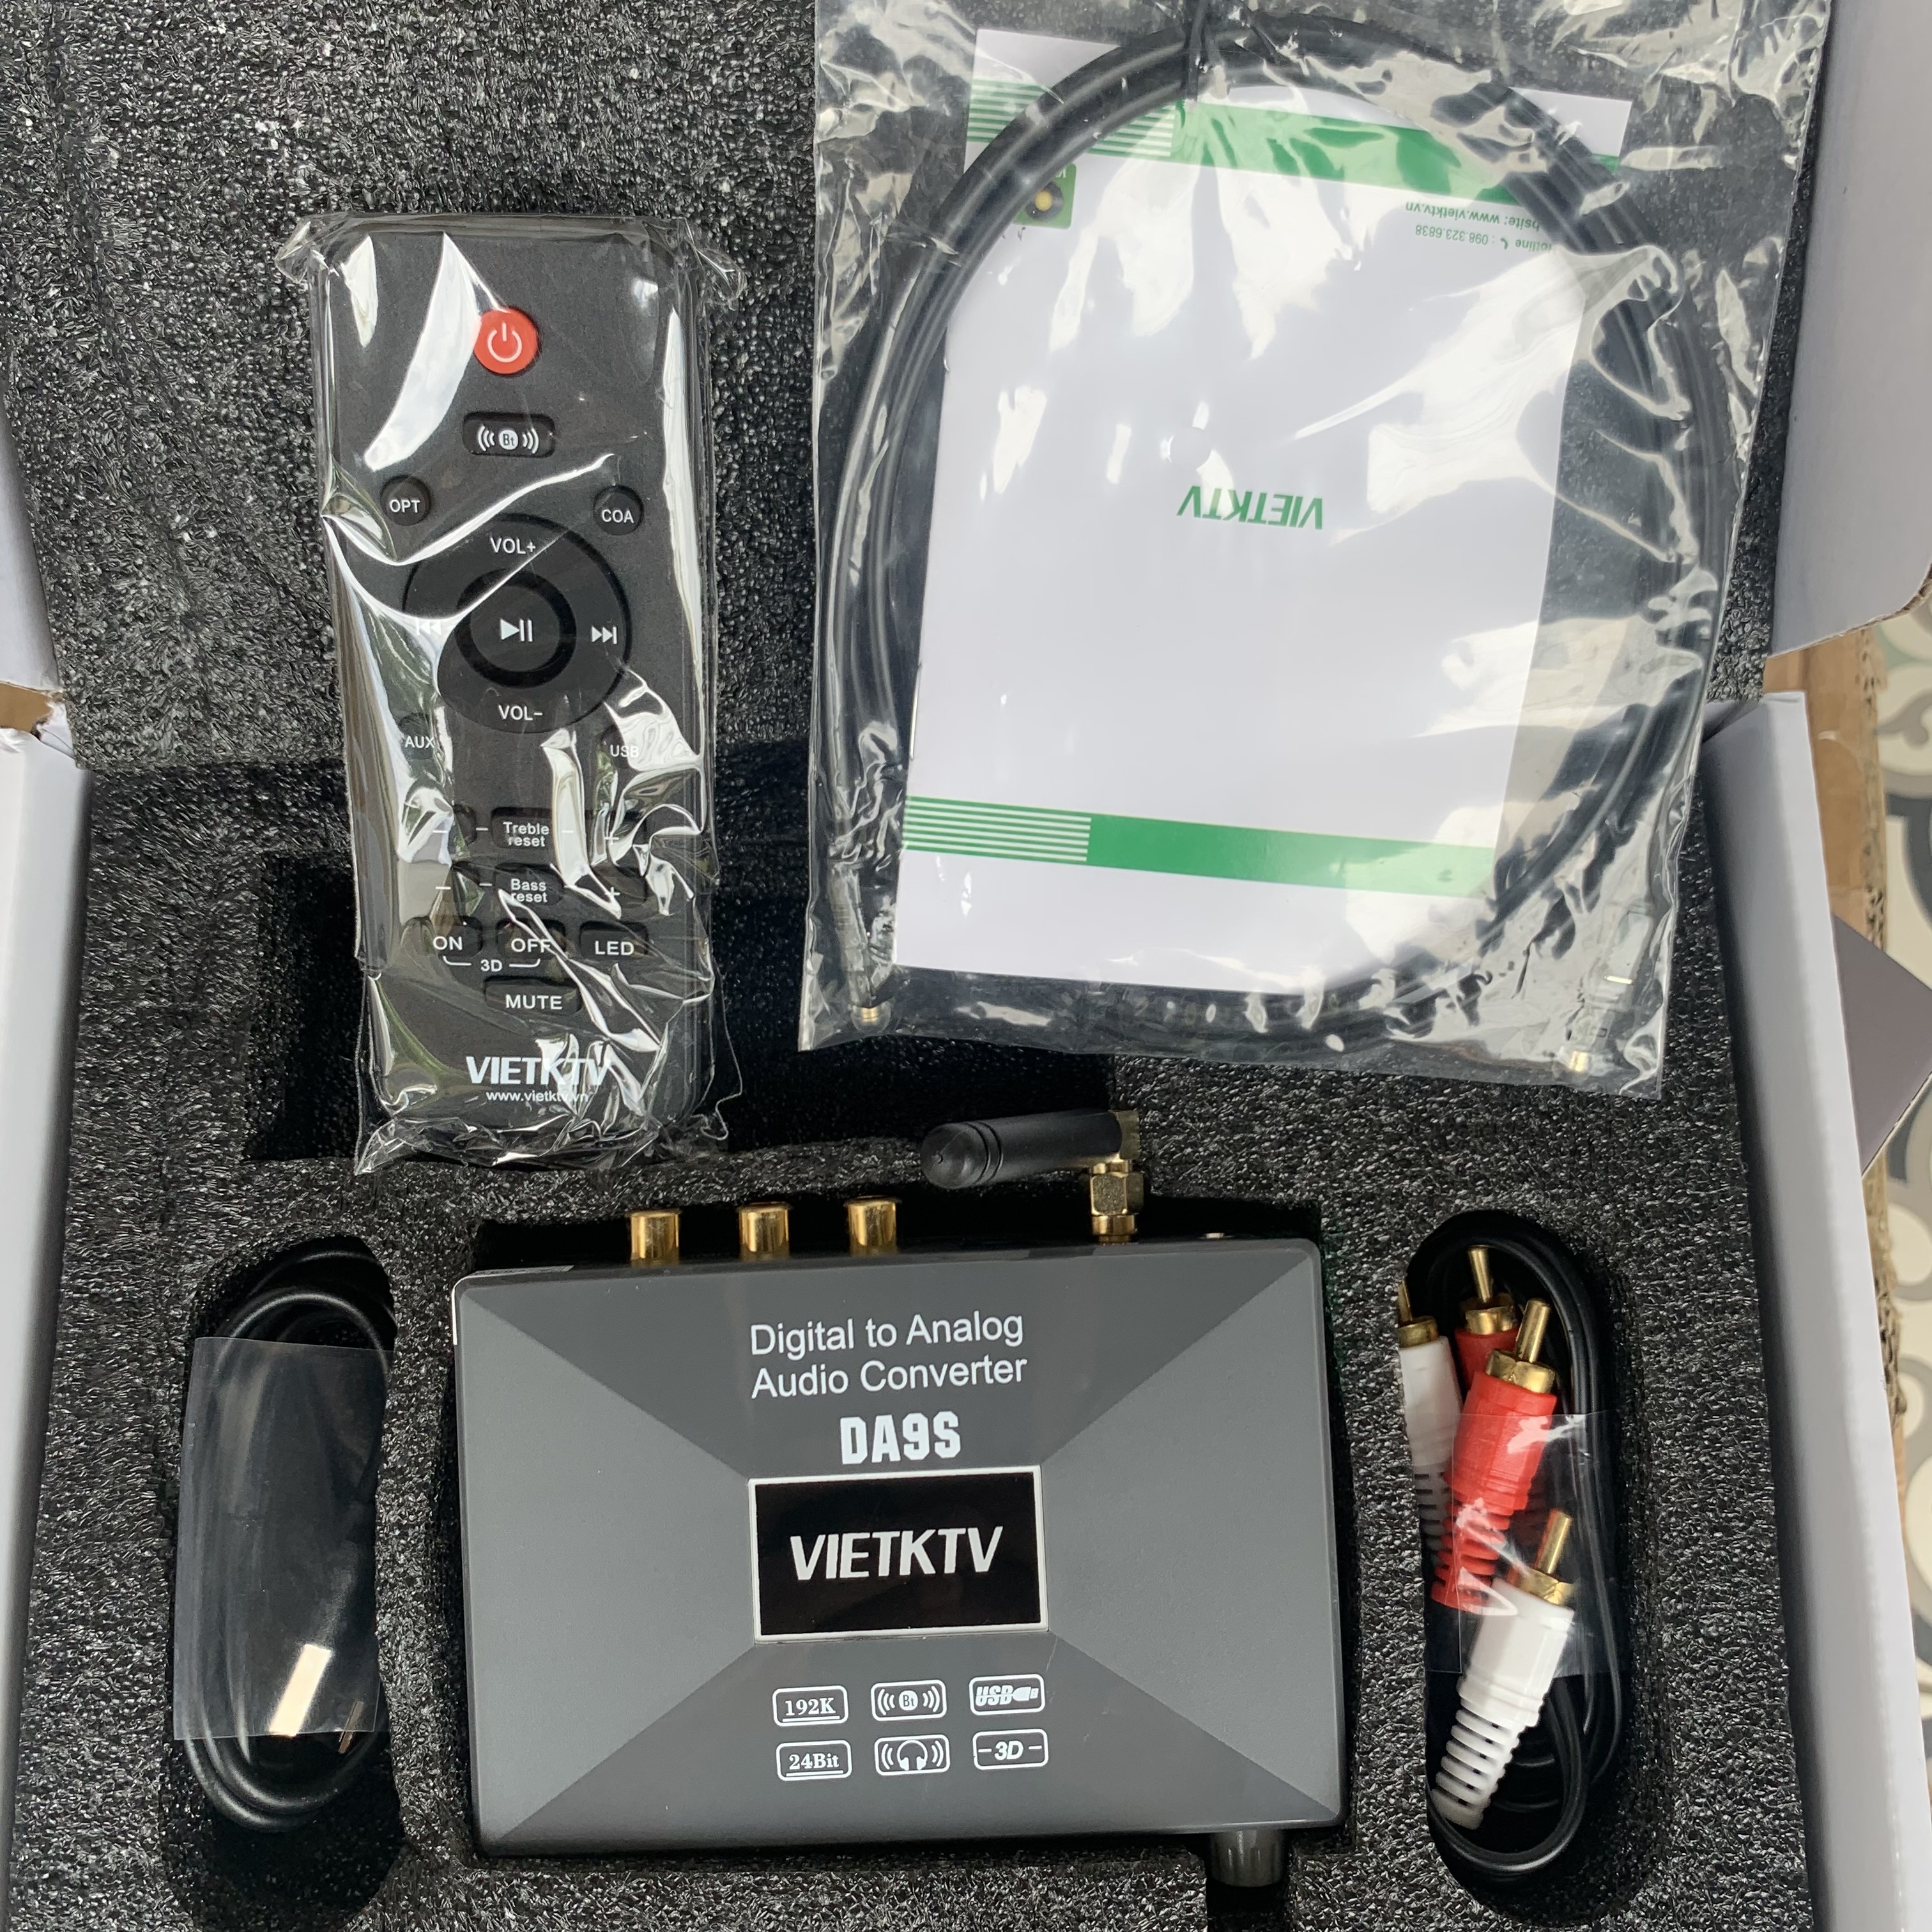 VietKTV DA9S - DAC giải mã âm thanh nghe nhạc chất lượng cao 24bit - Có khiển từ xa, bluetooth 5.0 - Chuyển đổi quang học sang AV - Hàng chính hãng